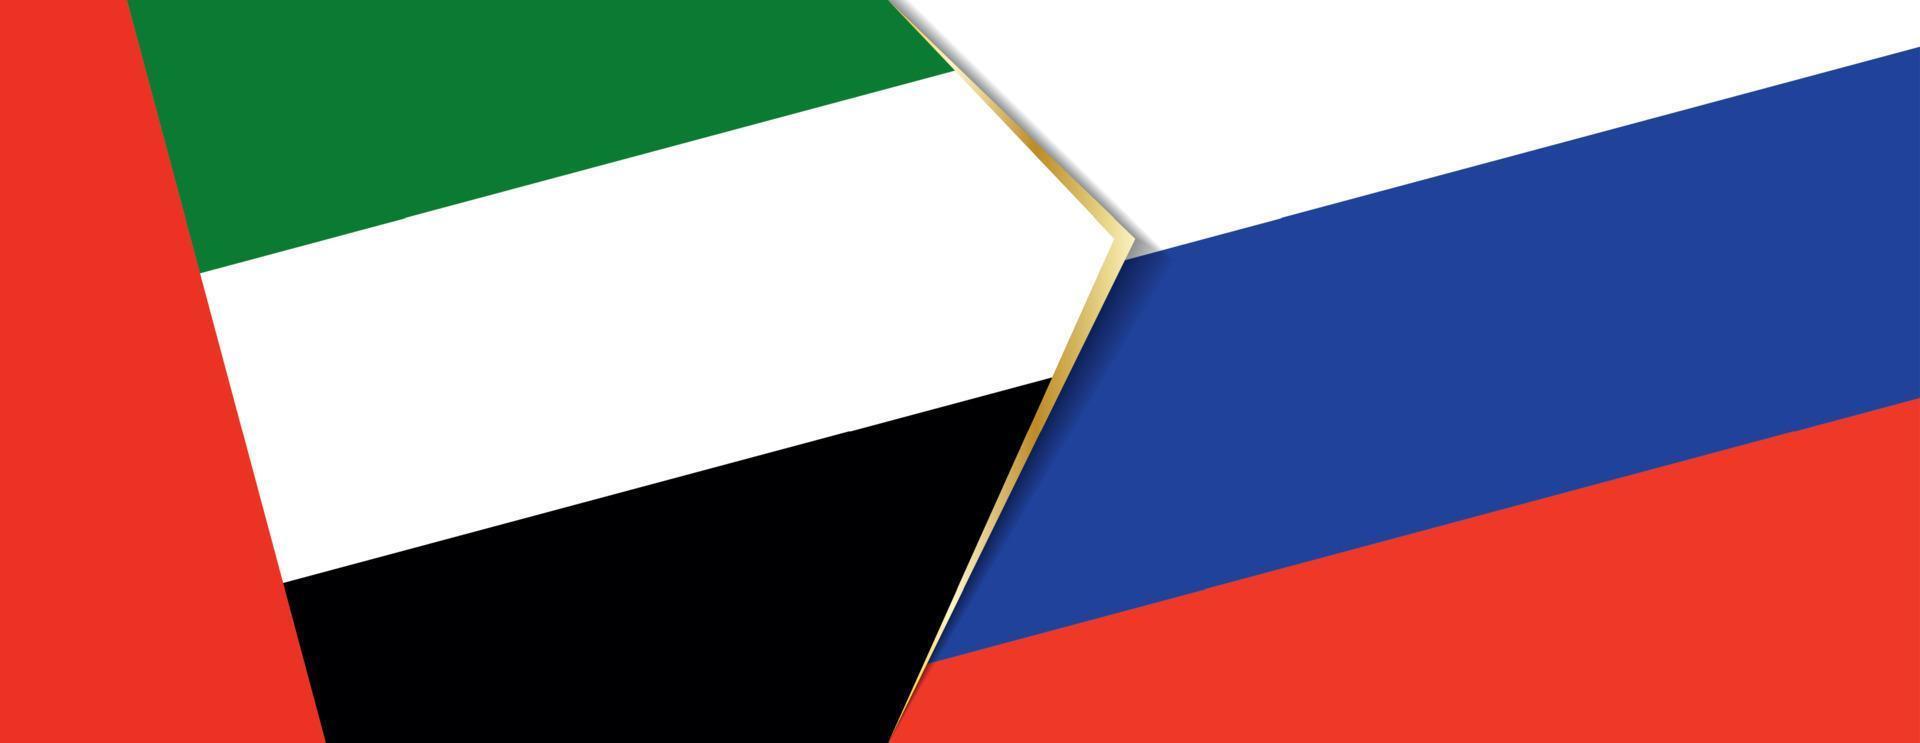 unito arabo Emirates e Russia bandiere, Due vettore bandiere.